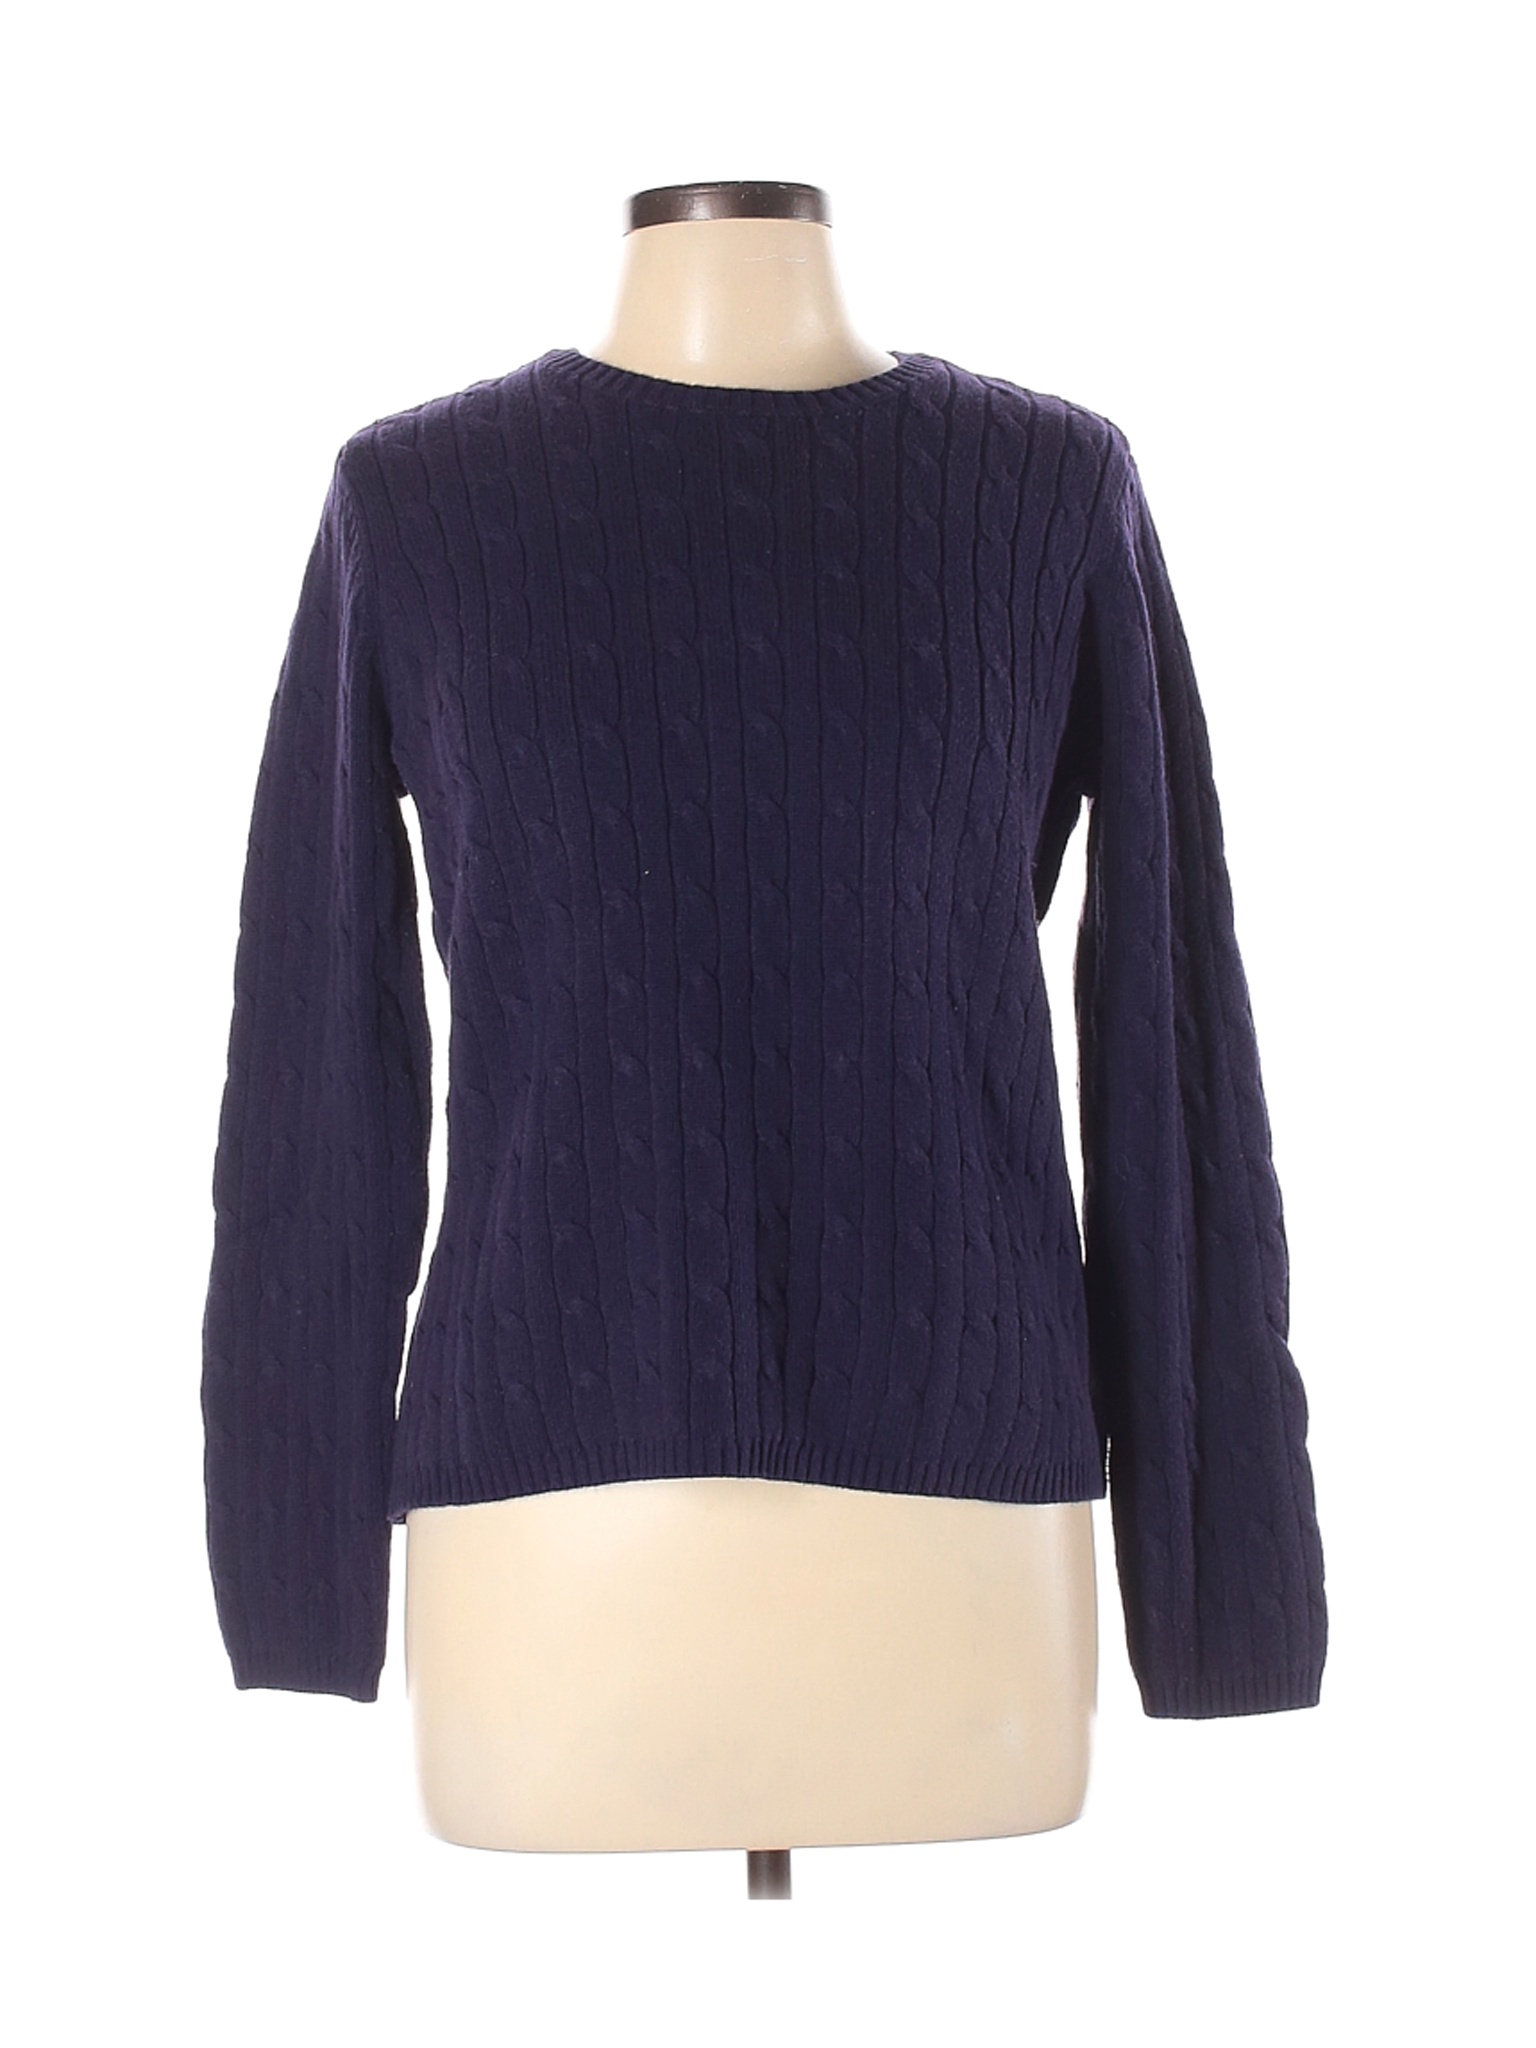 St. John's Bay Women Blue Pullover Sweater L | eBay